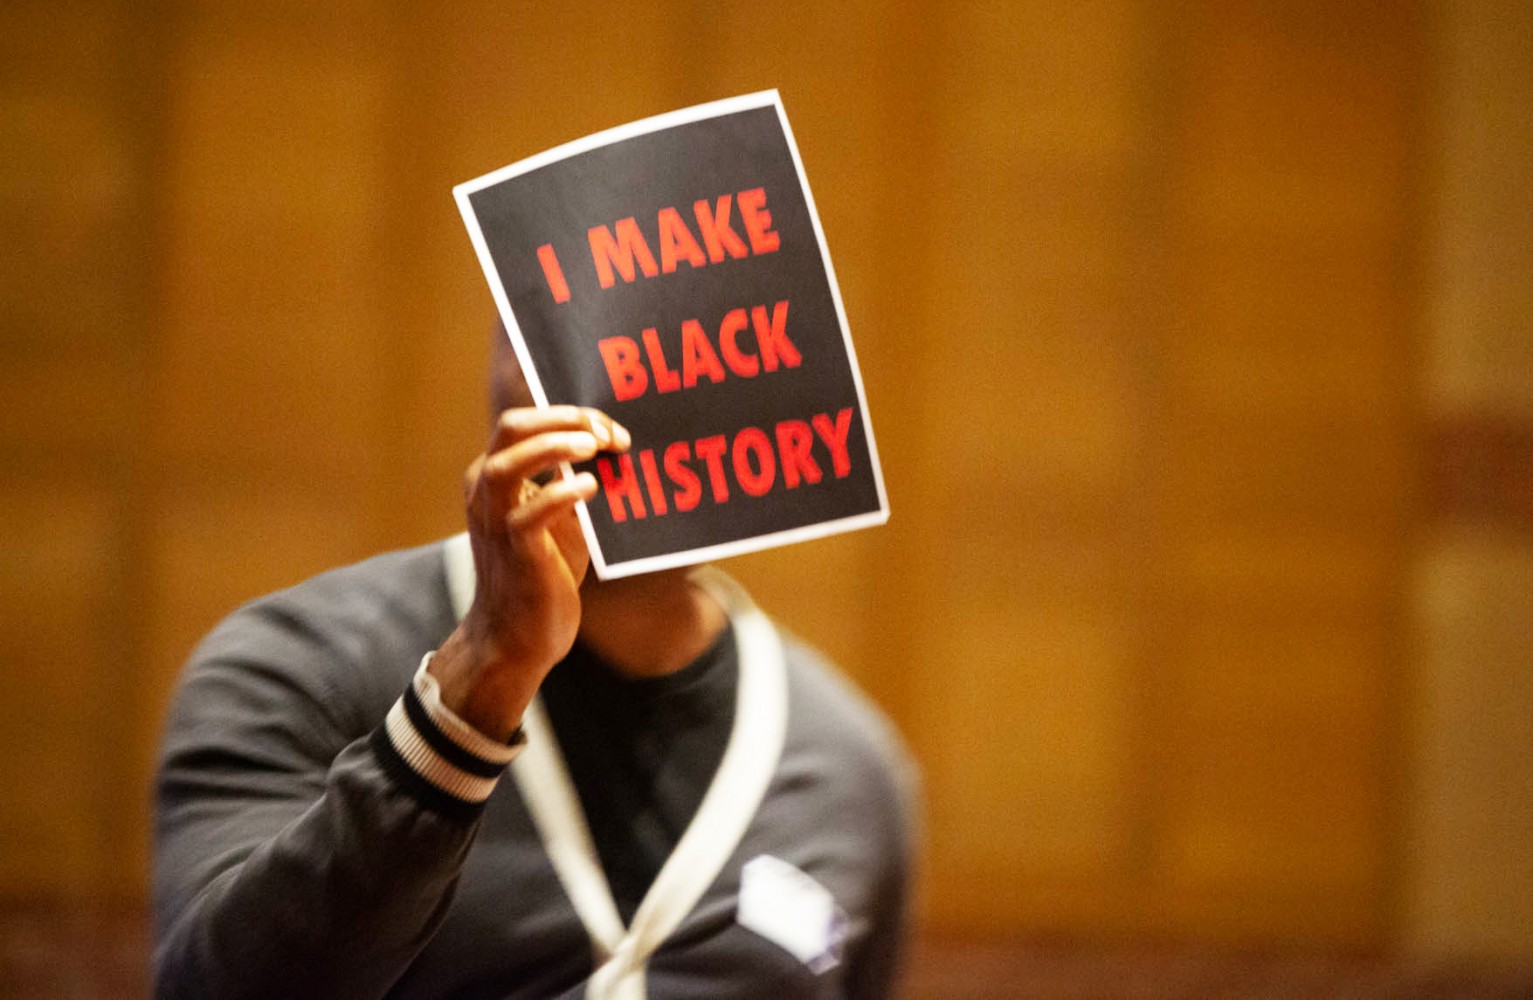 Members of Peel's Black community accuse school board trustees of institutional racism at heated meeting